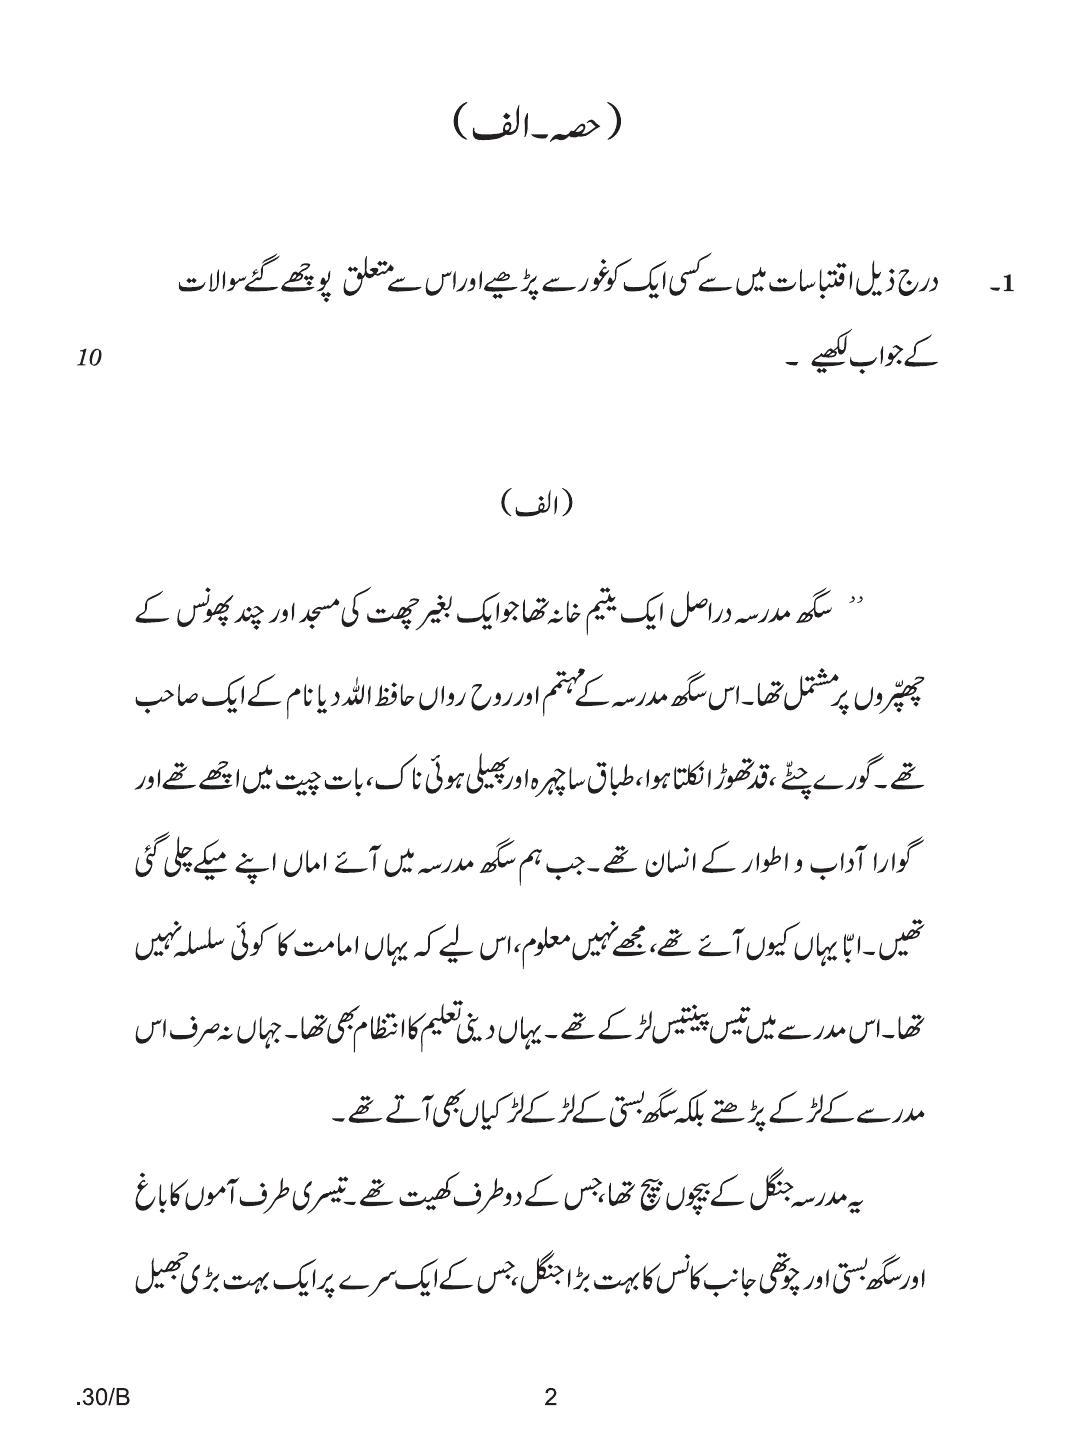 CBSE Class 12 Urdu Elective 2020 Compartment Question Paper - Page 2